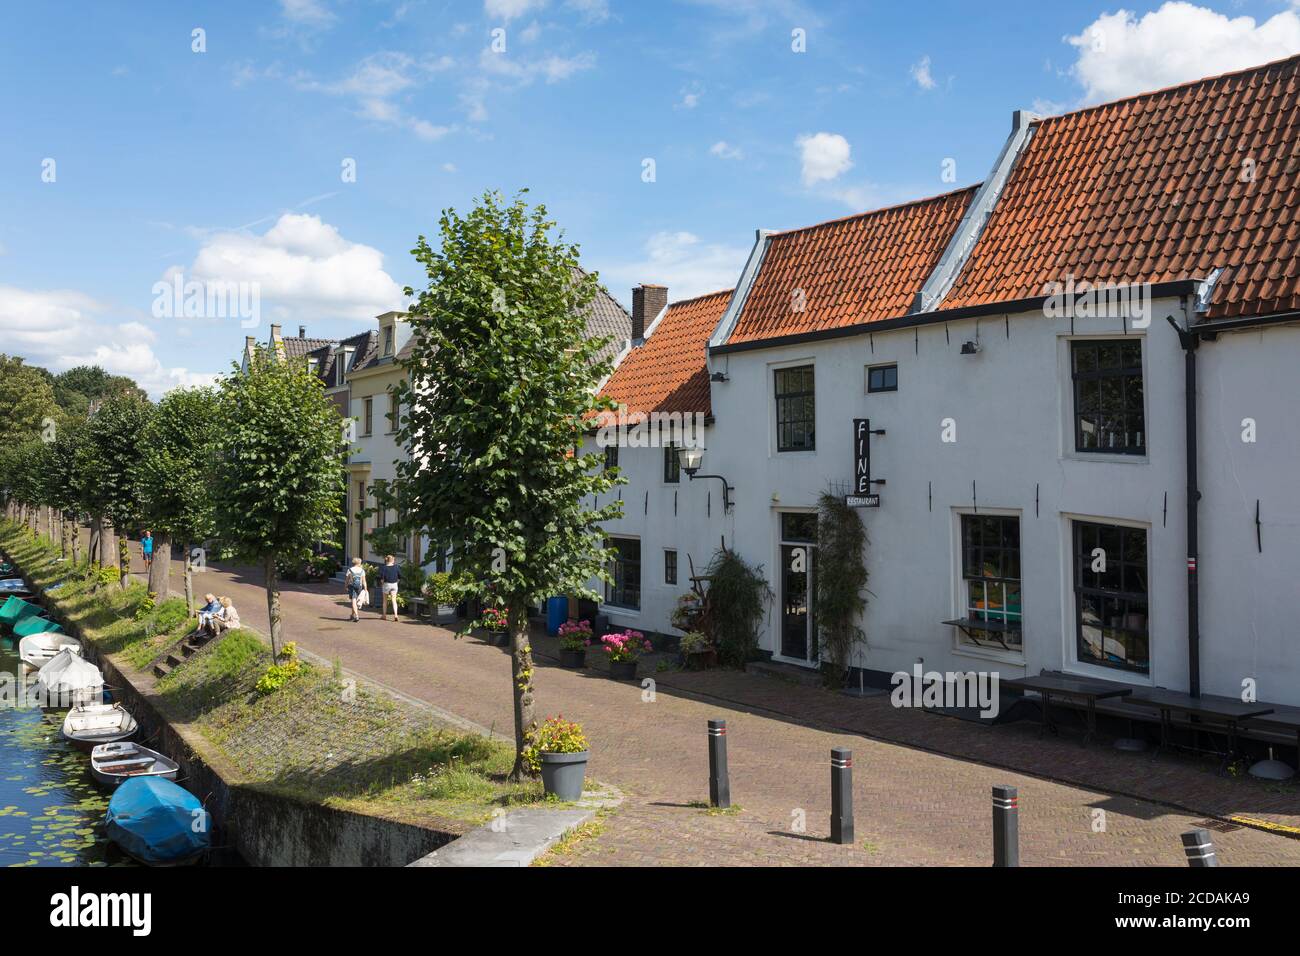 Gente que visita la ciudad histórica de Naarden Vesting en el países bajos Foto de stock